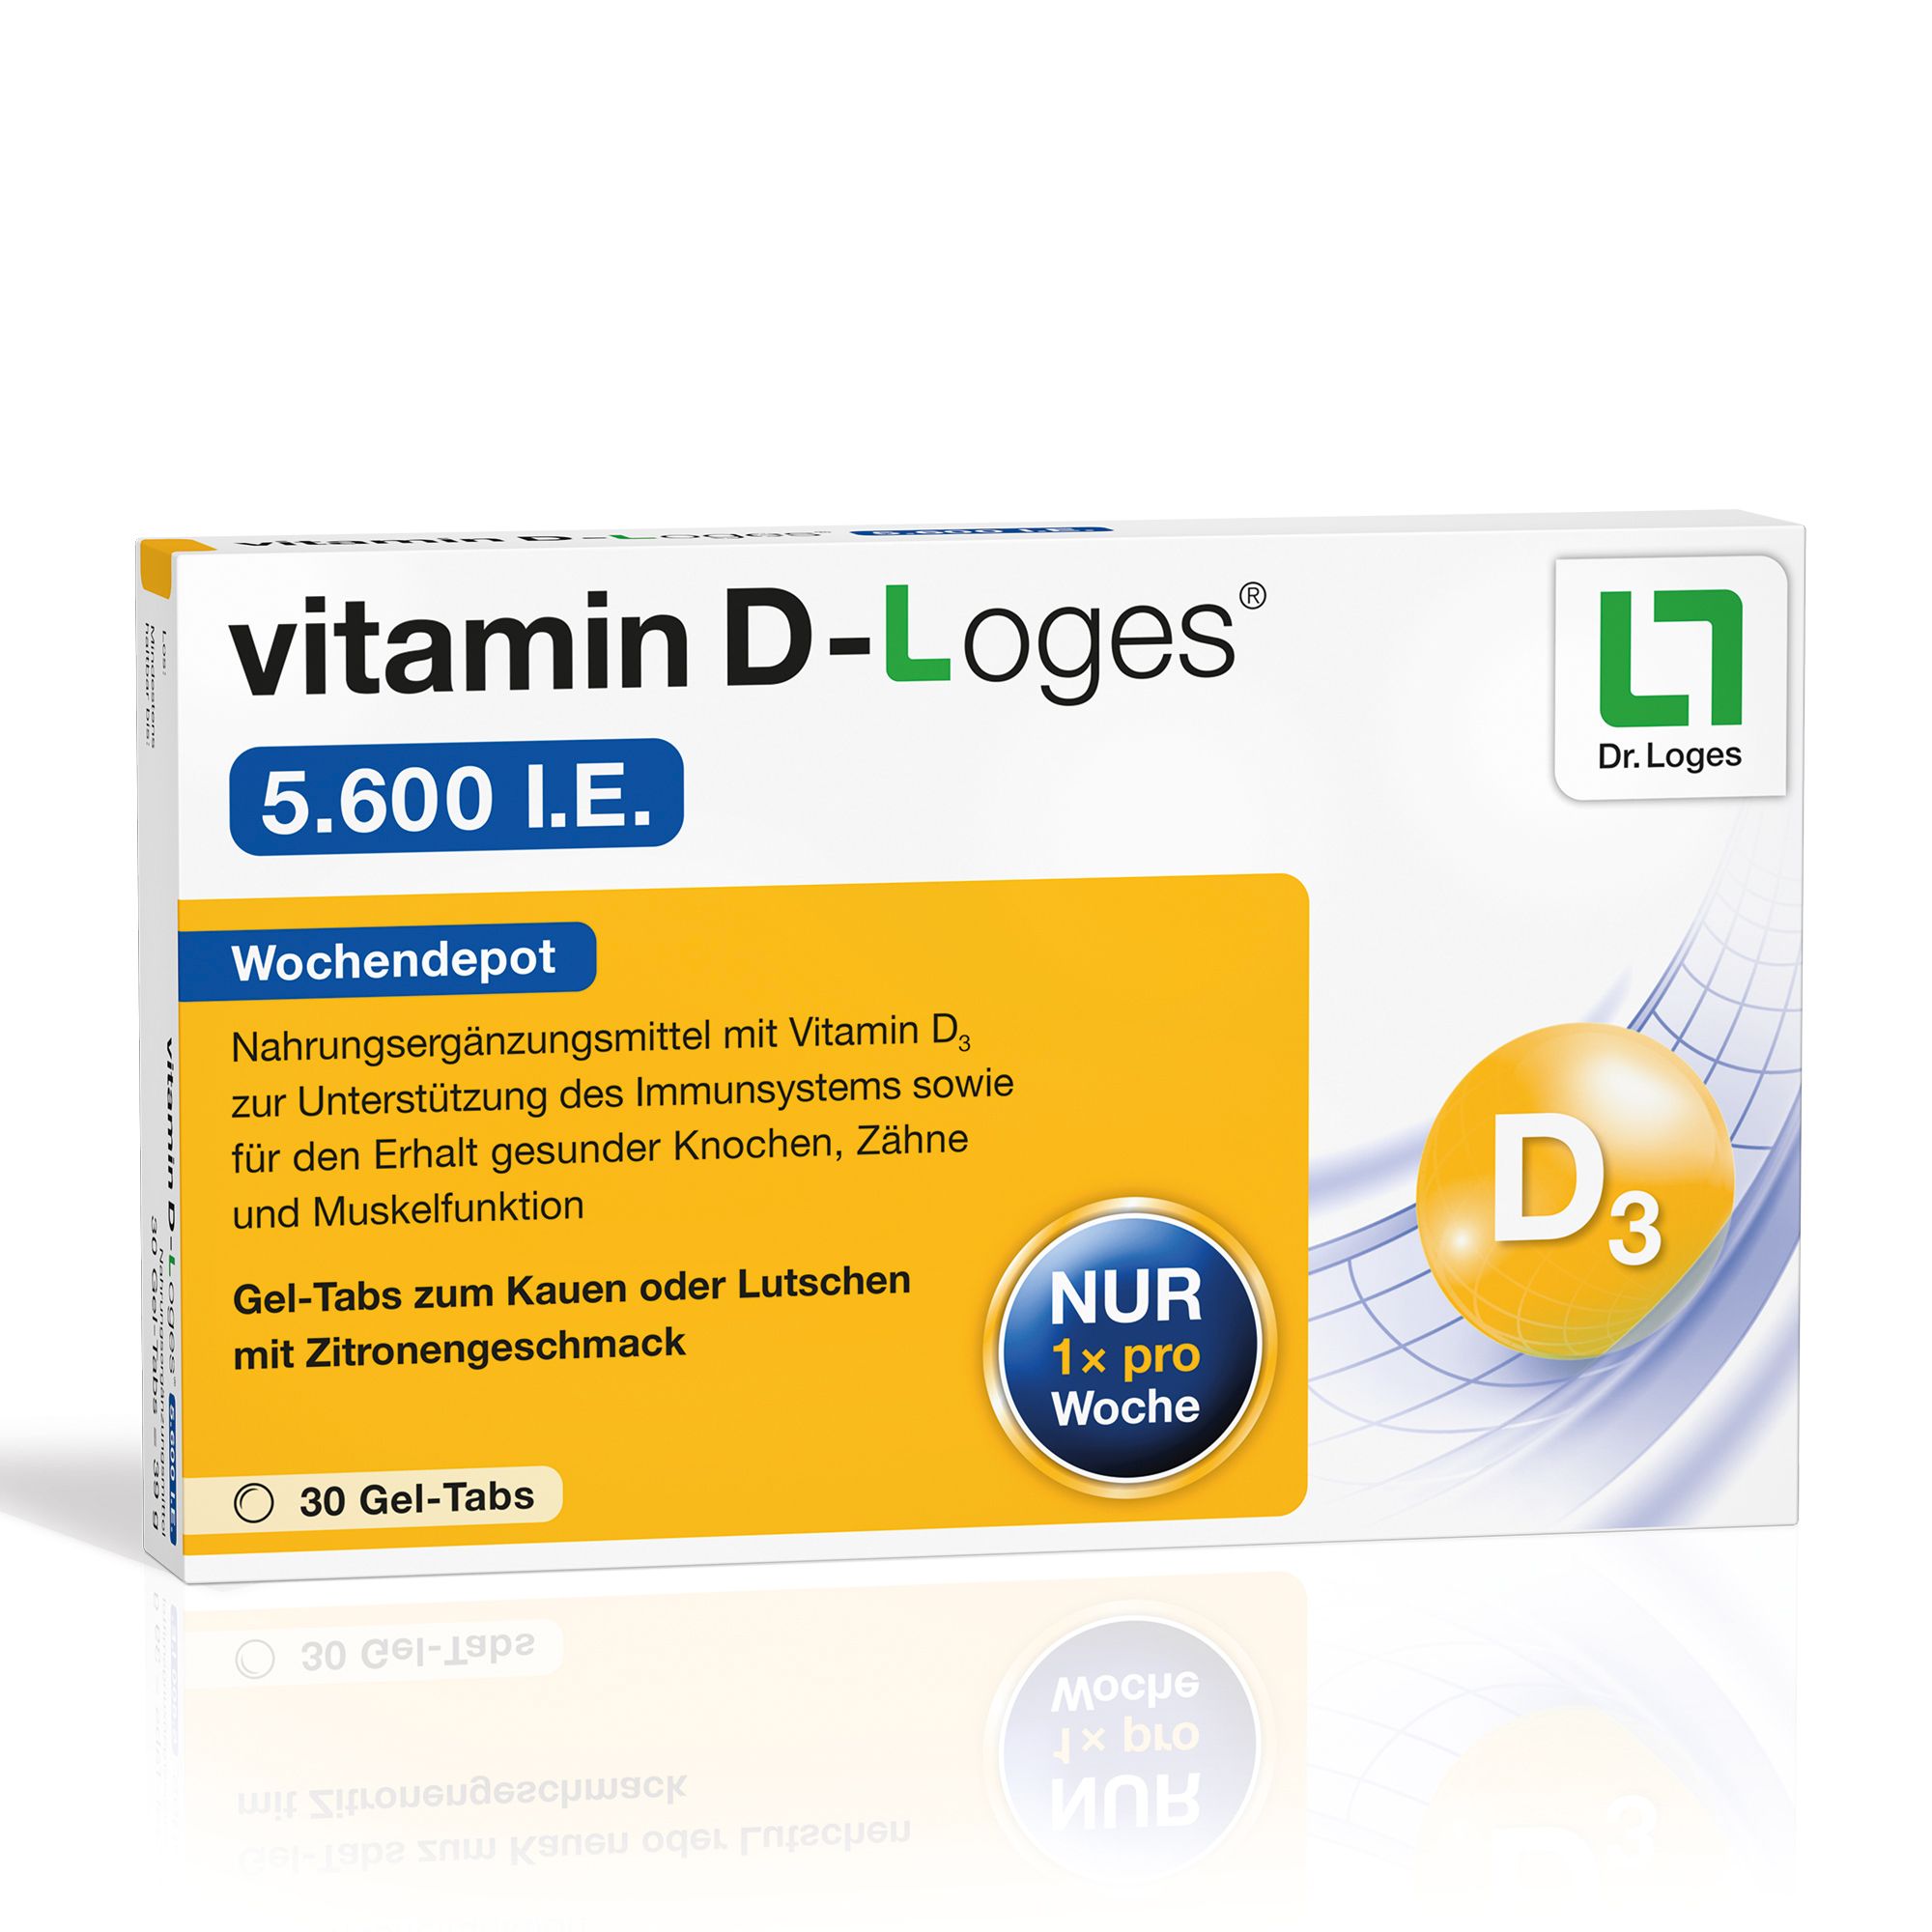 Image of vitamin D-Loges® 5.600 I.E.